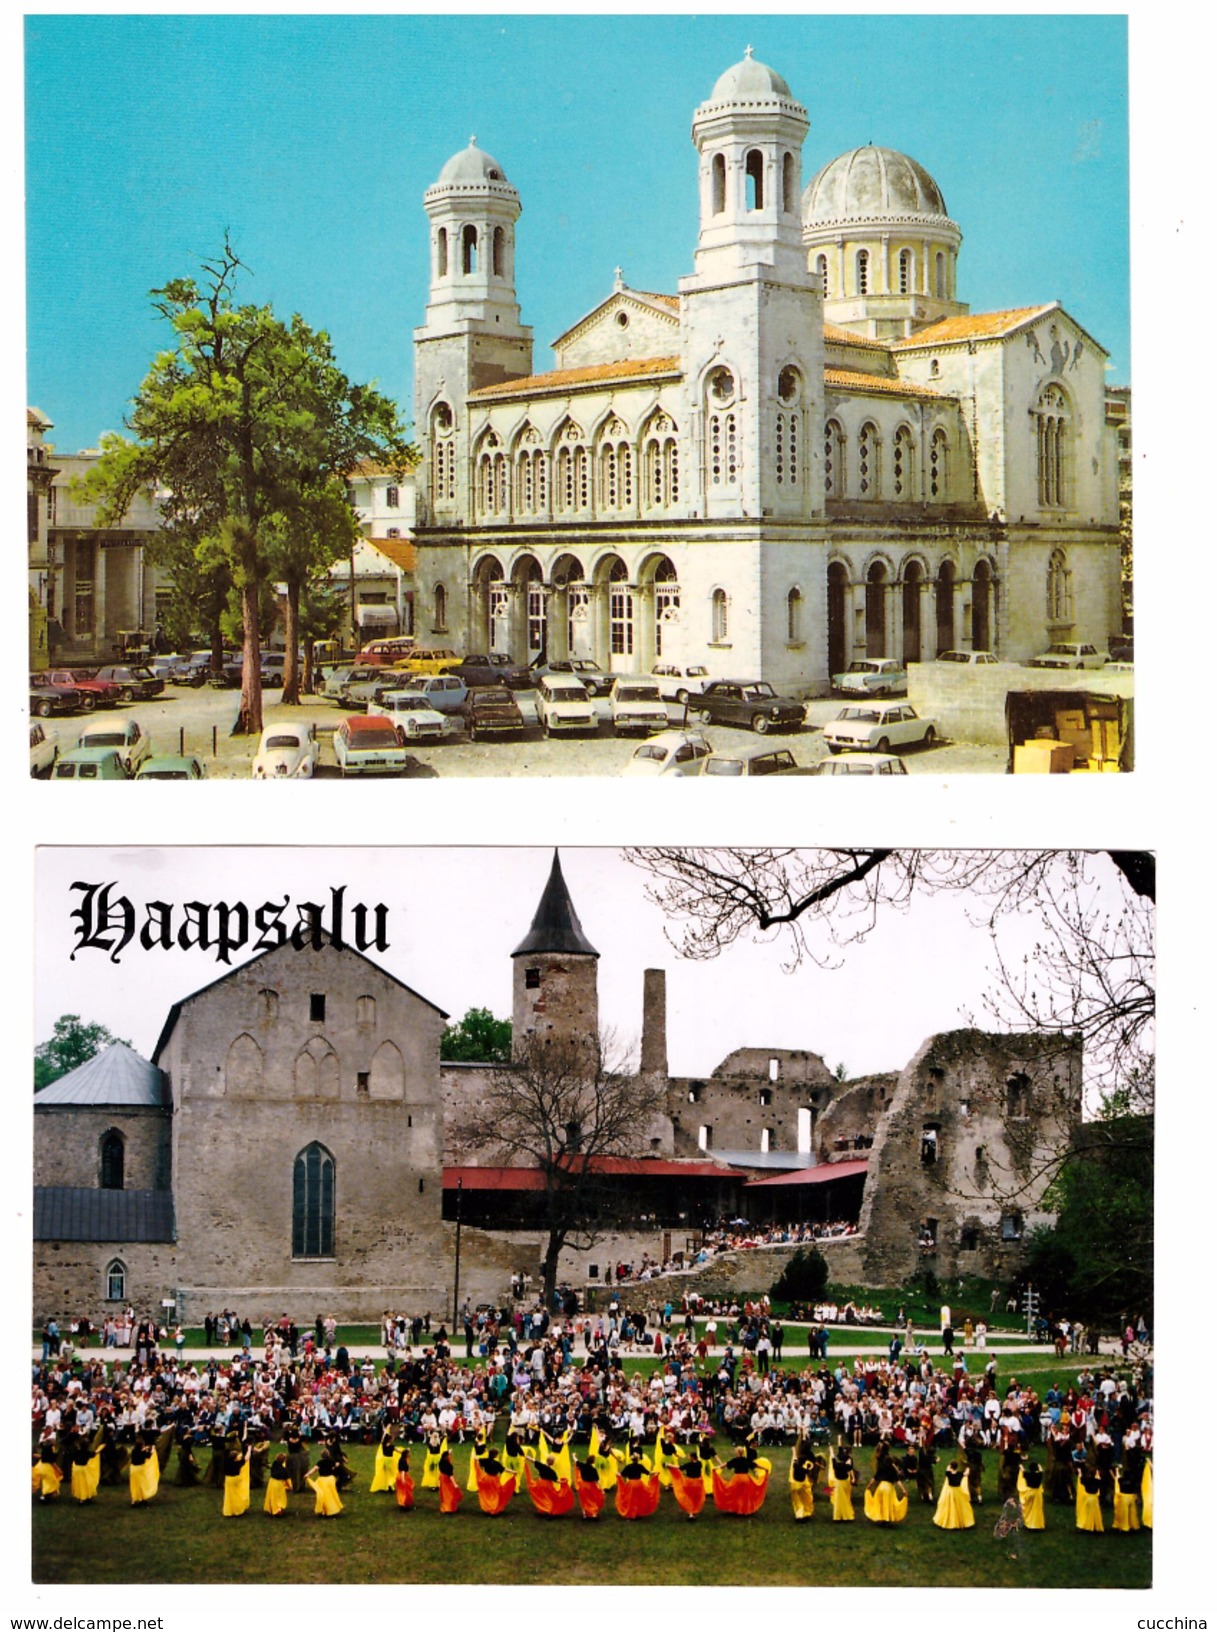 Cartolina NUOVA Con Veduta LIMASSOL  Veduta Cattedrale Santa NARA - Cartolina Viaggiata Con Veduta HAAPSALU ESTONIA - Cipro